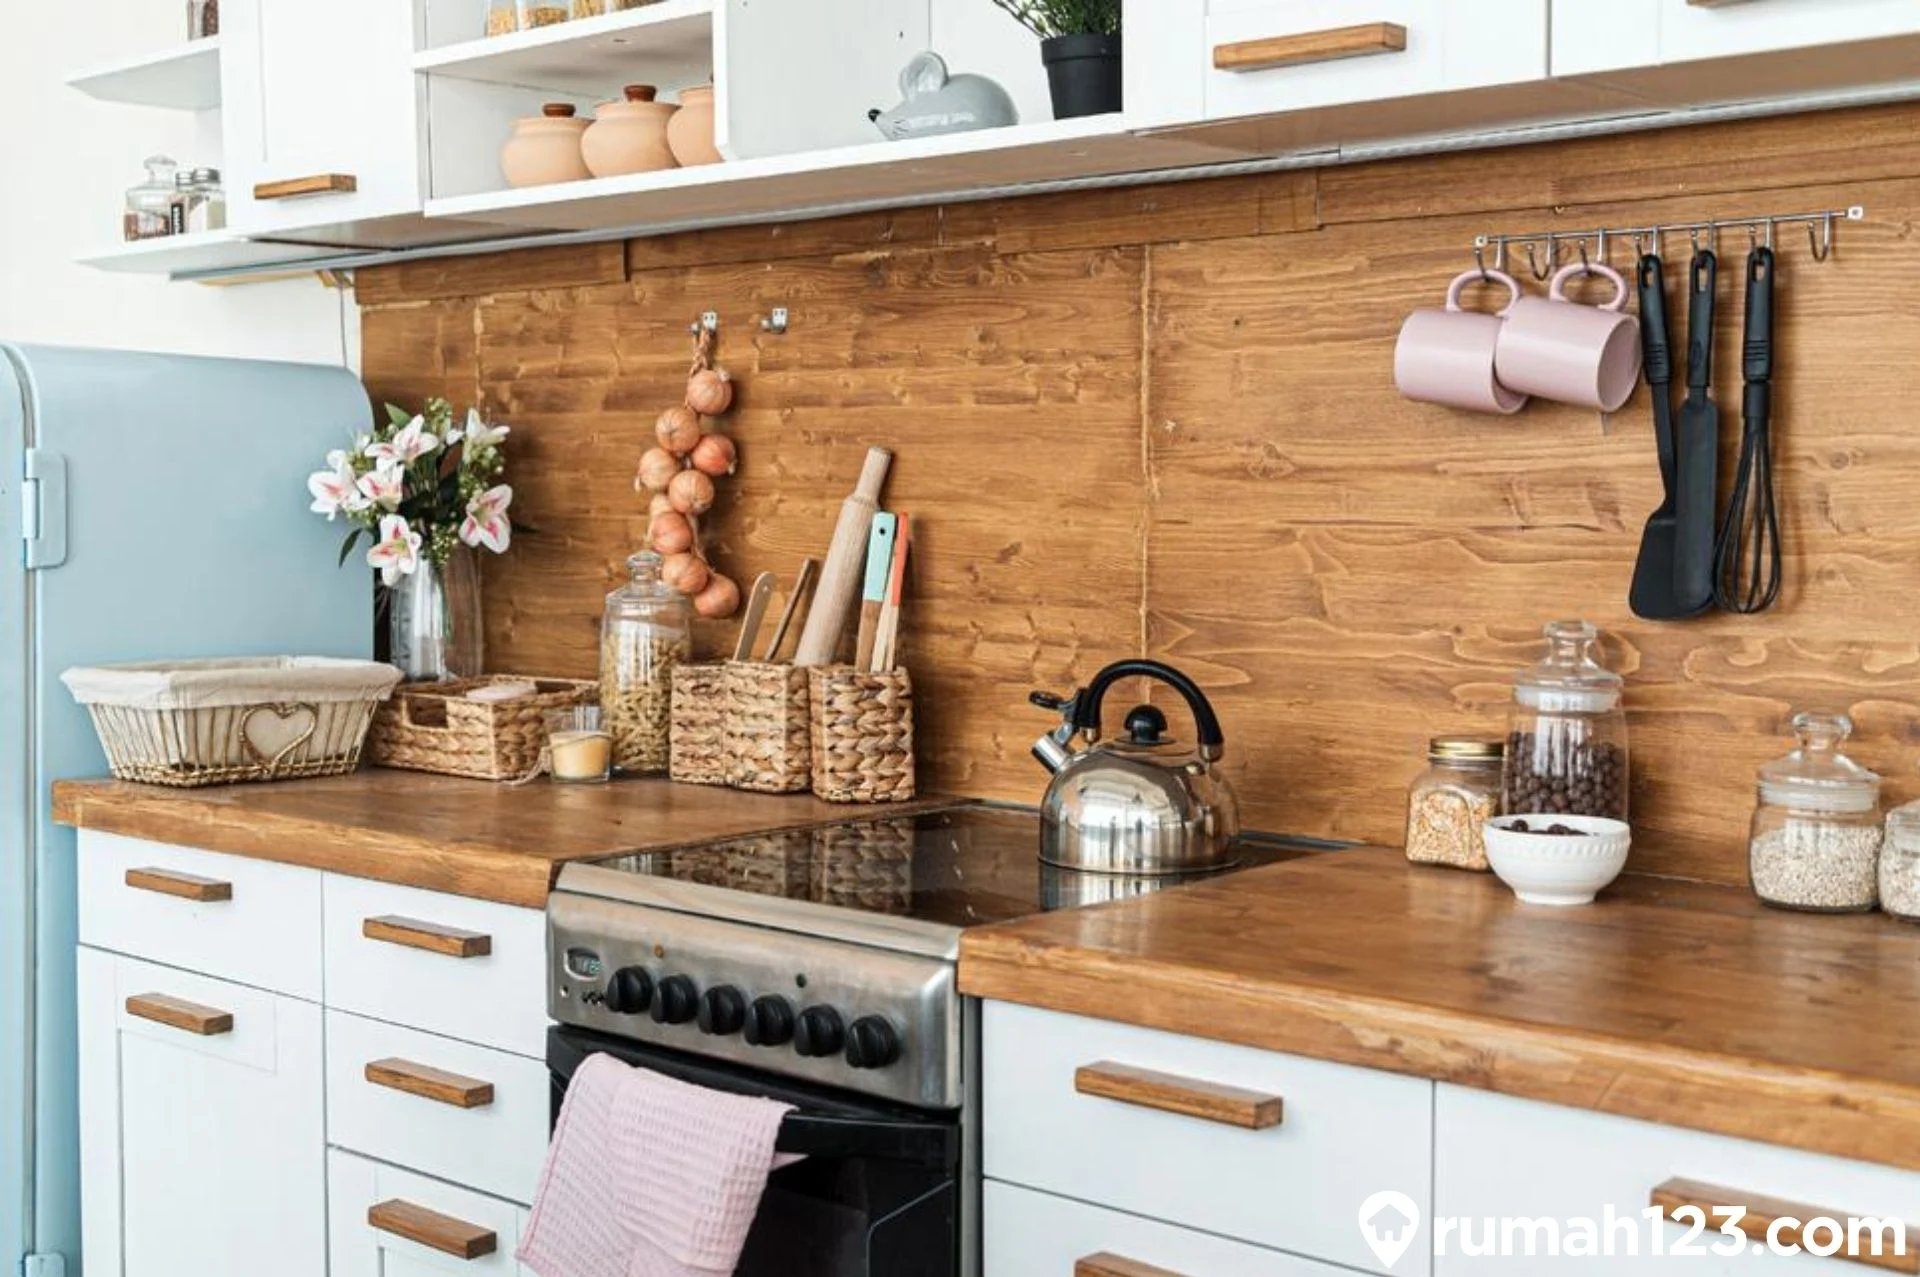 Keramik kitchen set dengan motif kayu, dapat membuat tampilan dapur Anda terkesan natural, dan juga tradisional klasik. Sumber ; google.com